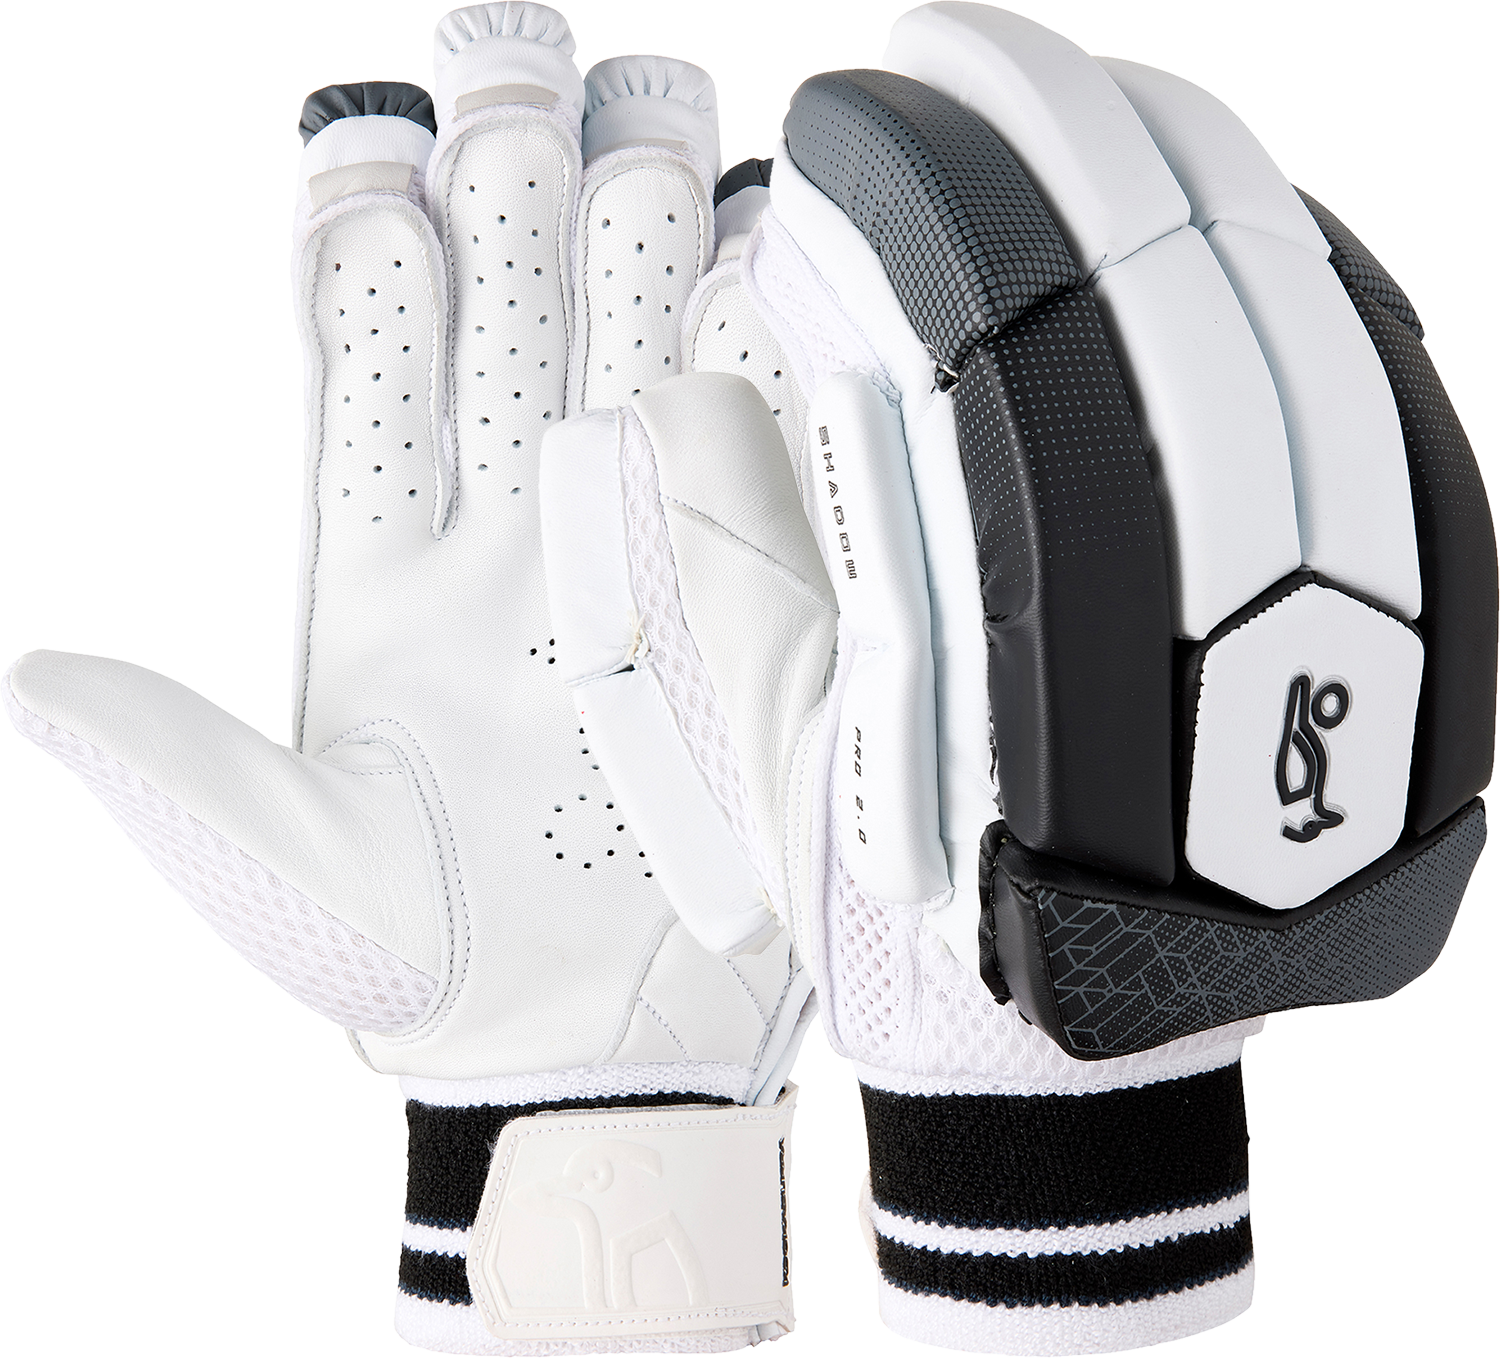 Kookaburra Shadow Pro 2.0 Batting Gloves